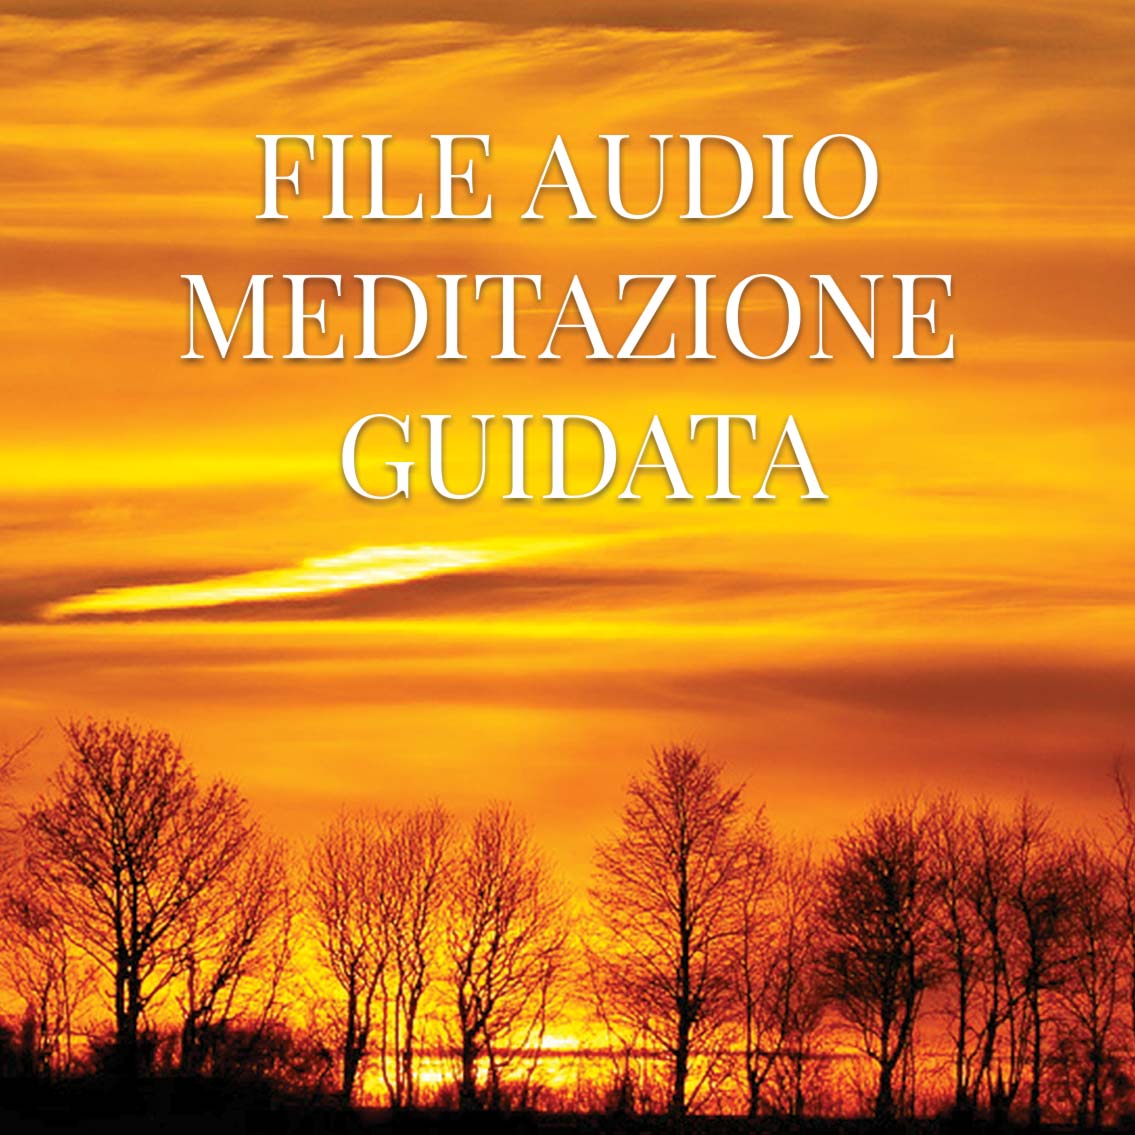 File Audio Meditazione Guidata